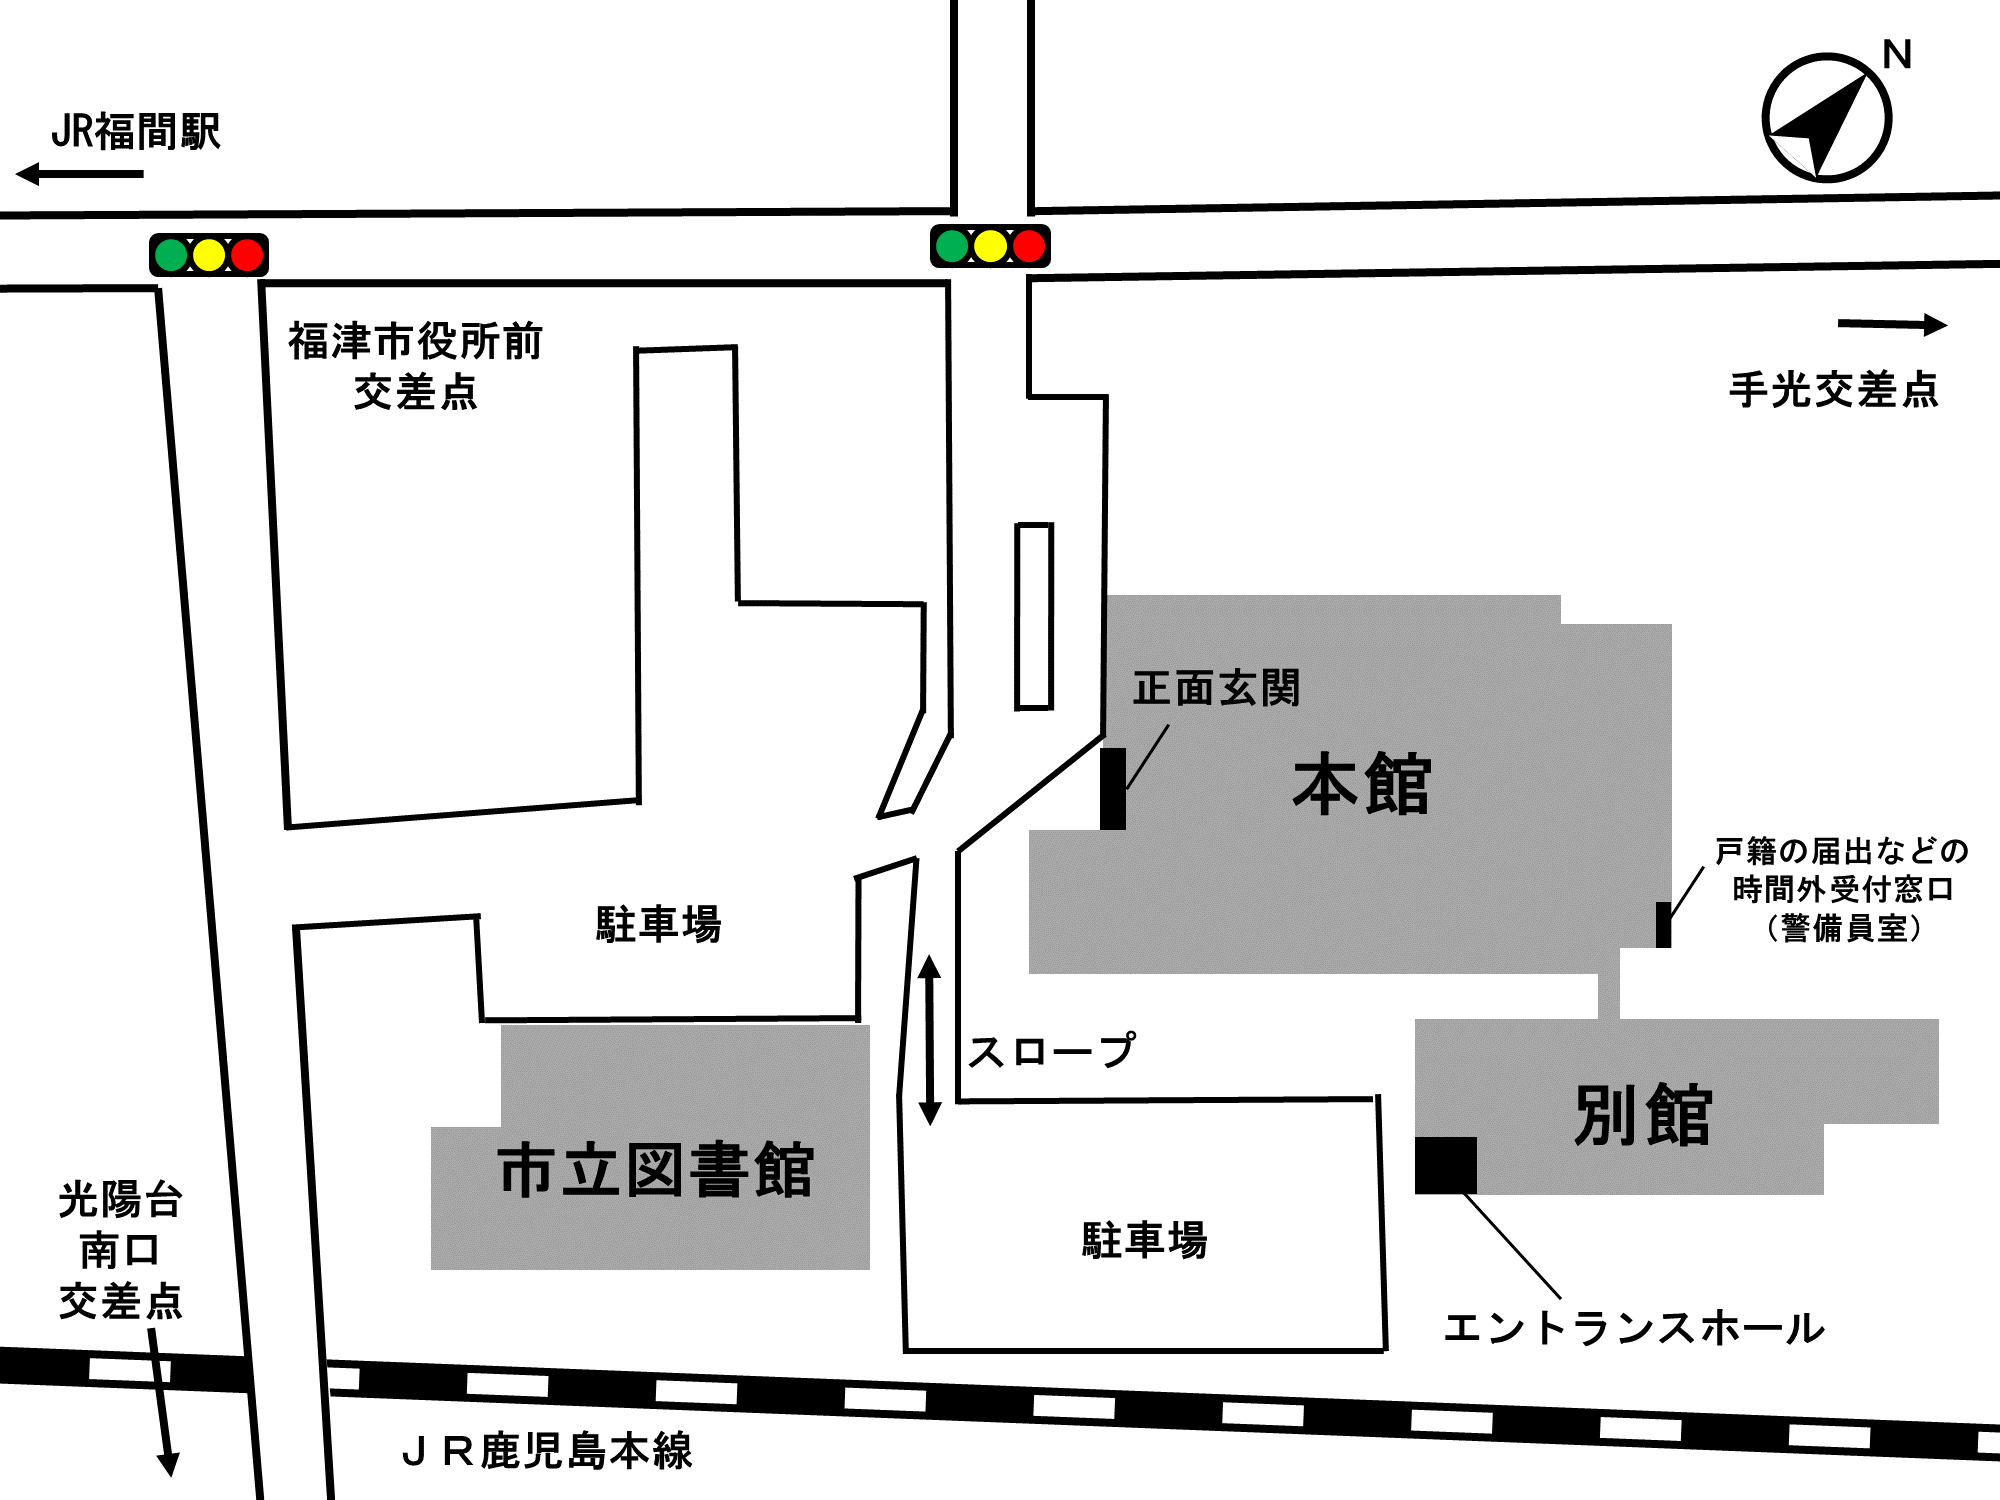 市役所の位置を示した地図